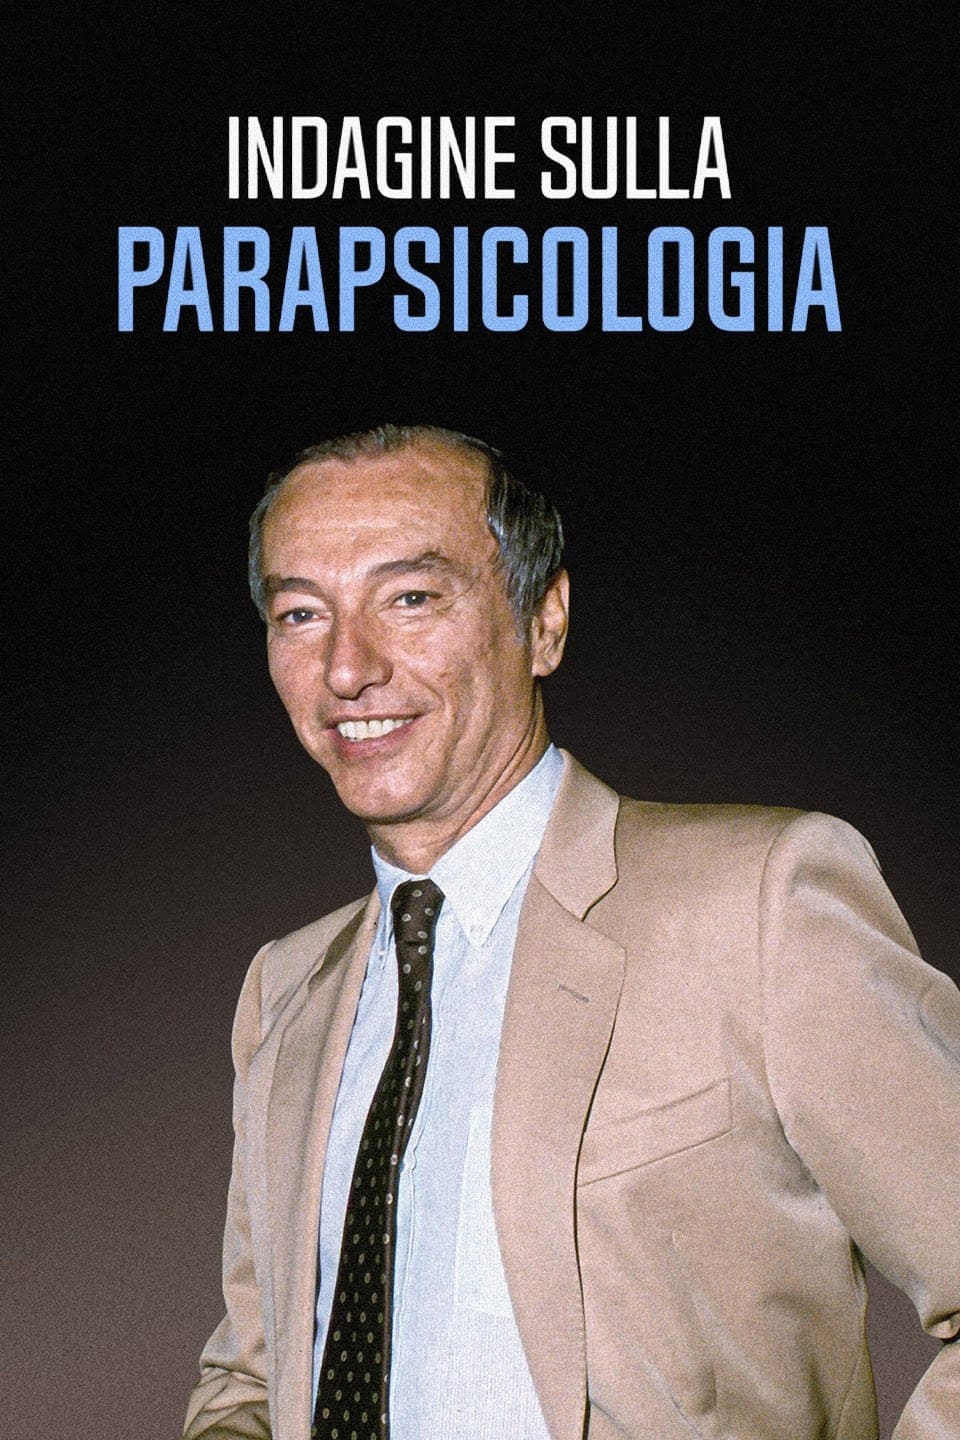 Indagine sulla parapsicologia